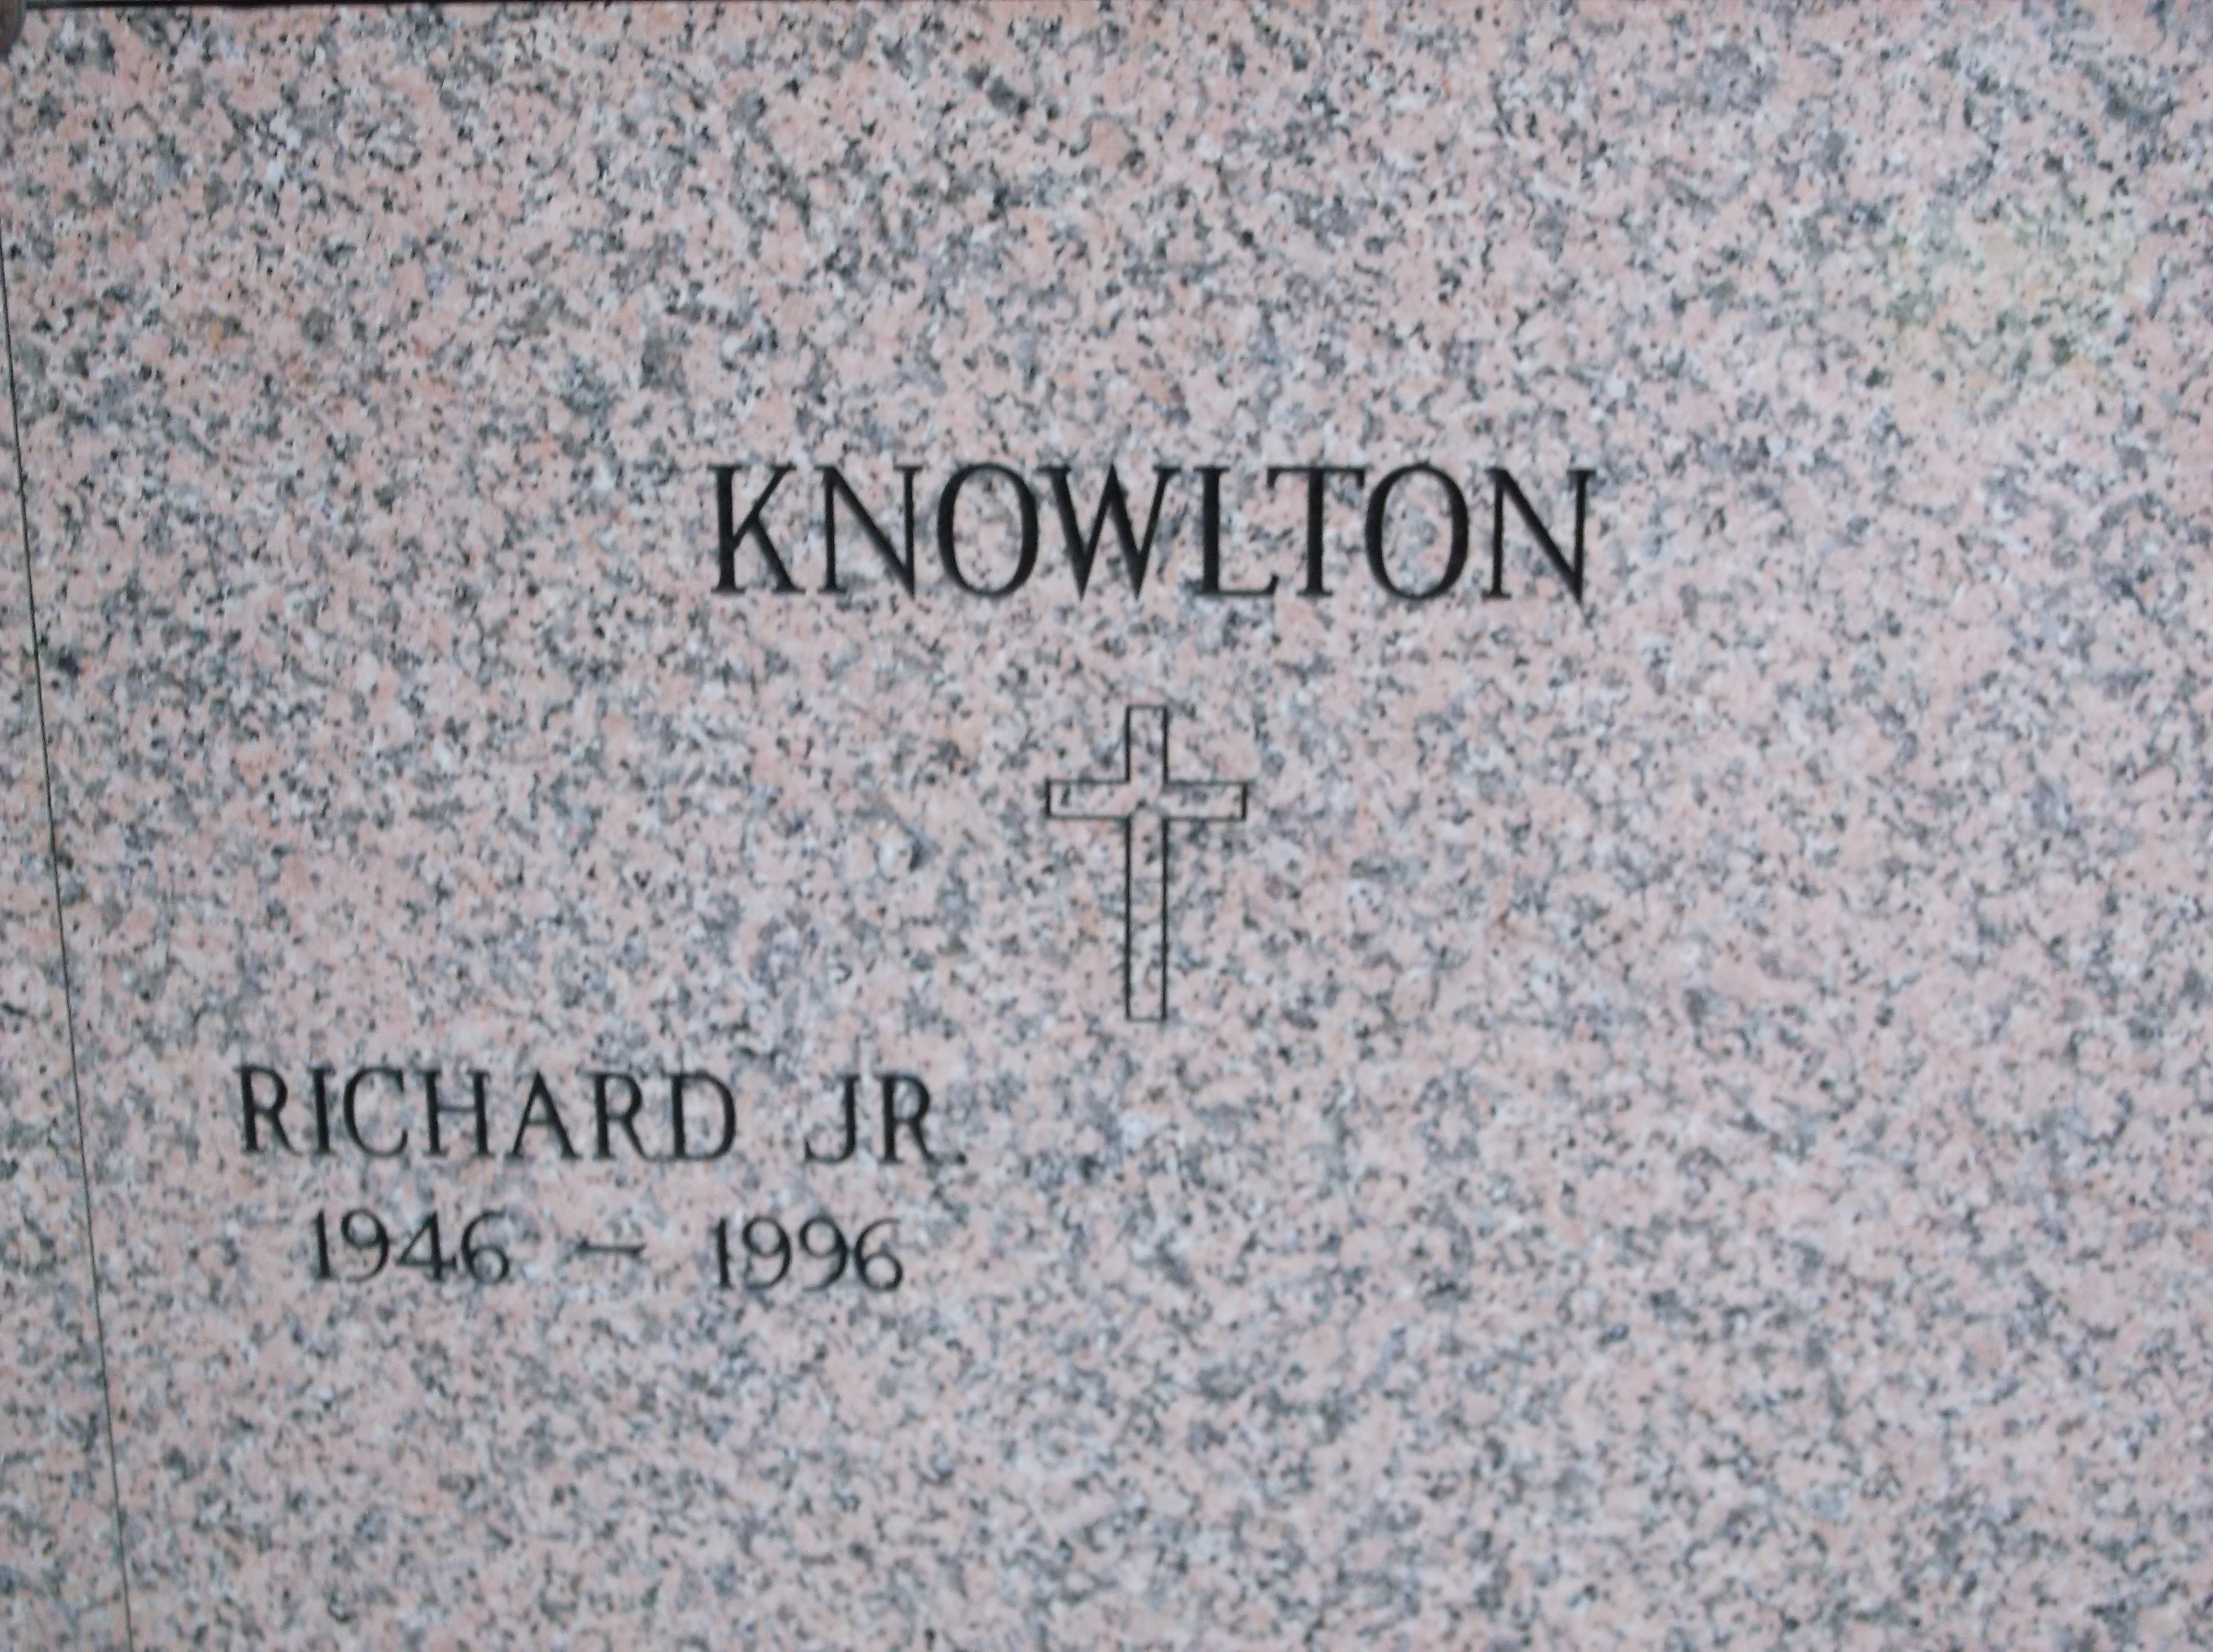 Richard Knowlton, Jr